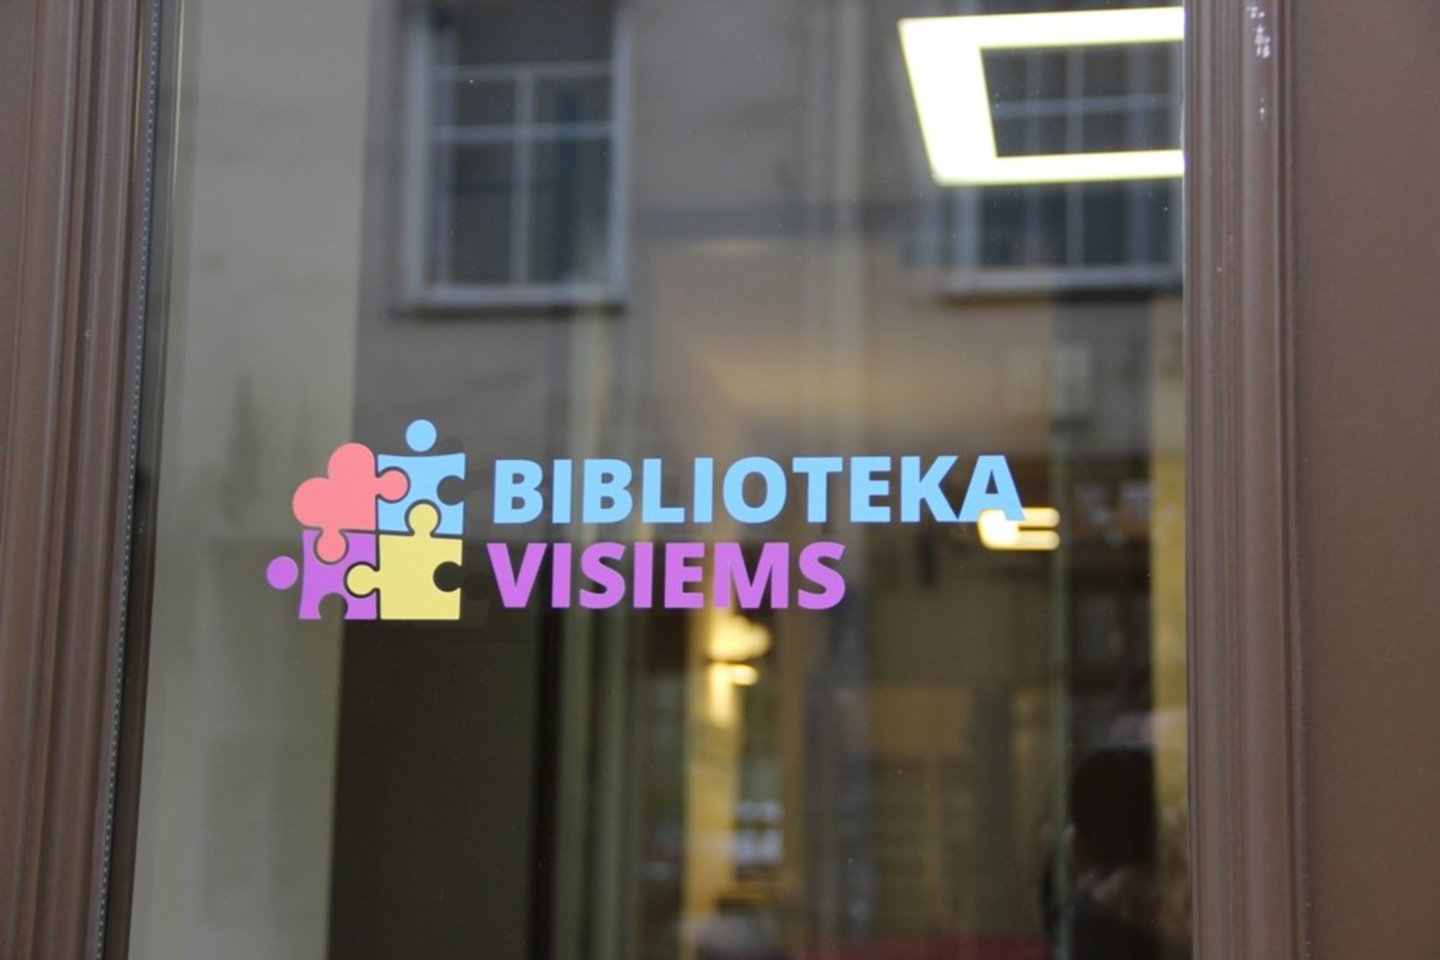 Nuo lapkričio mėnesio Lietuvos viešųjų bibliotekų duris puošia spalvota dėlionė „Biblioteka visiems“.<br> Pranešimo spaudai nuotr.